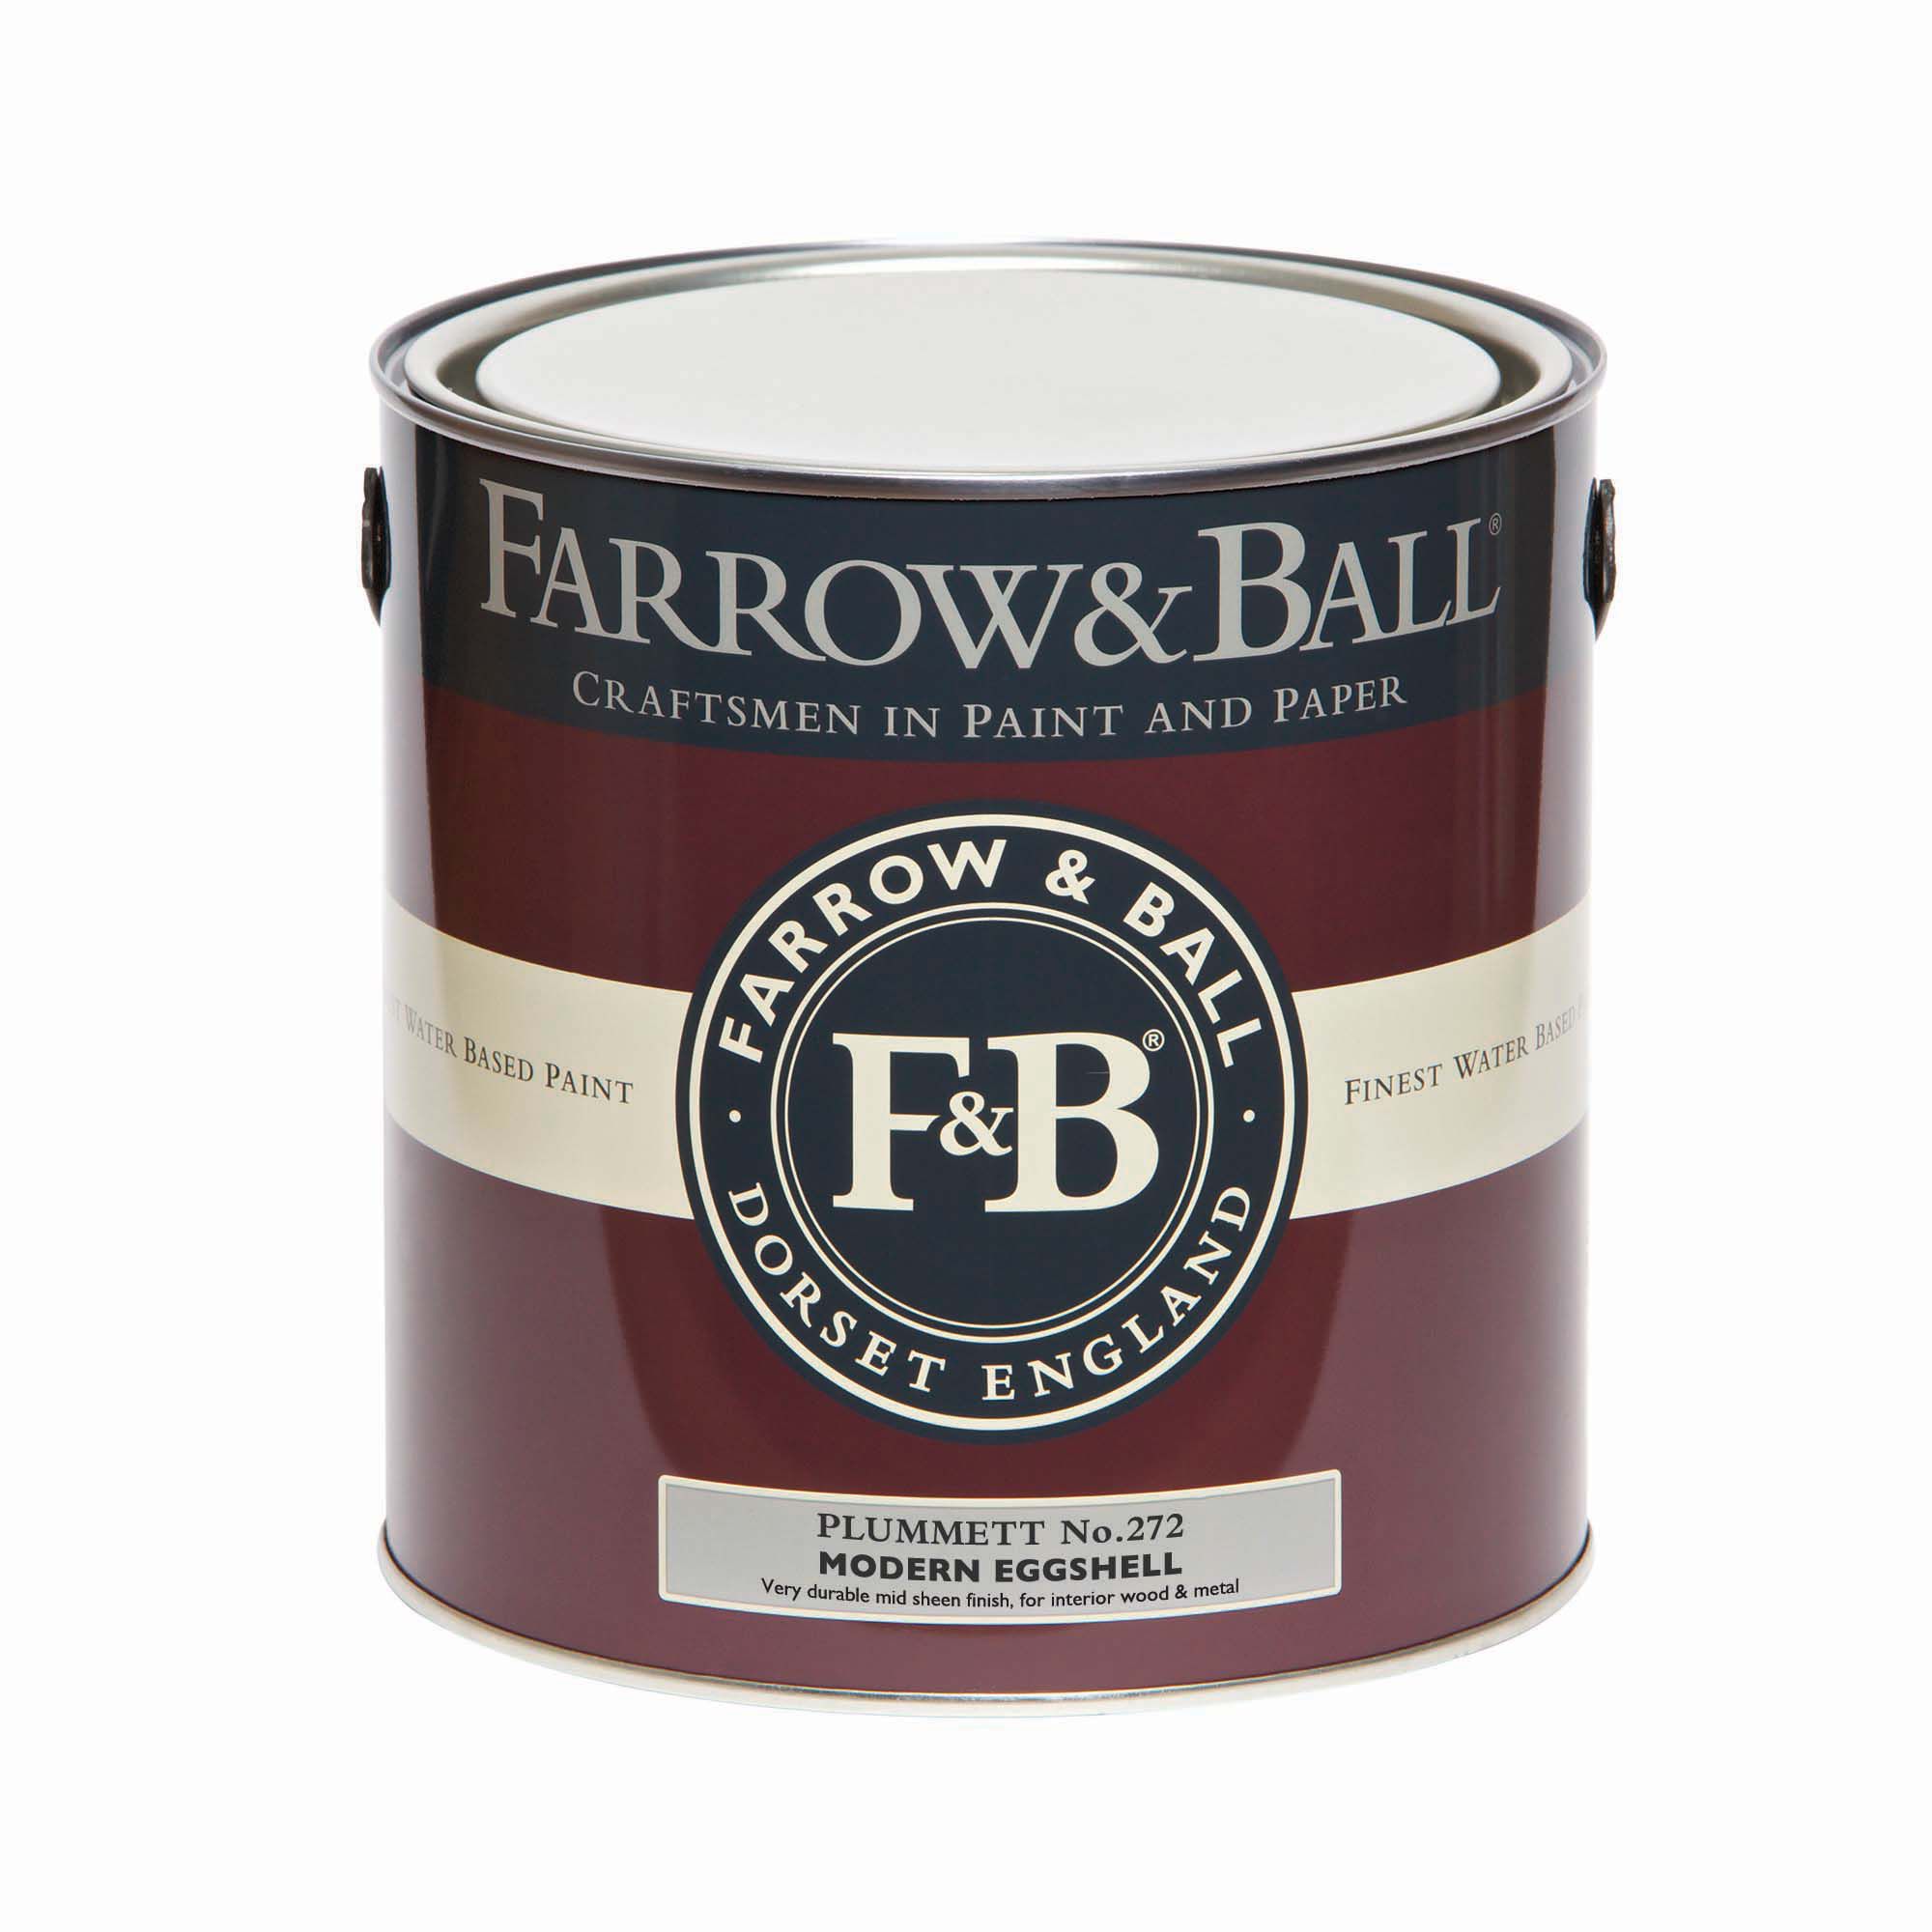 Farrow & Ball Modern Plummett No.272 Eggshell Paint, 2.5L